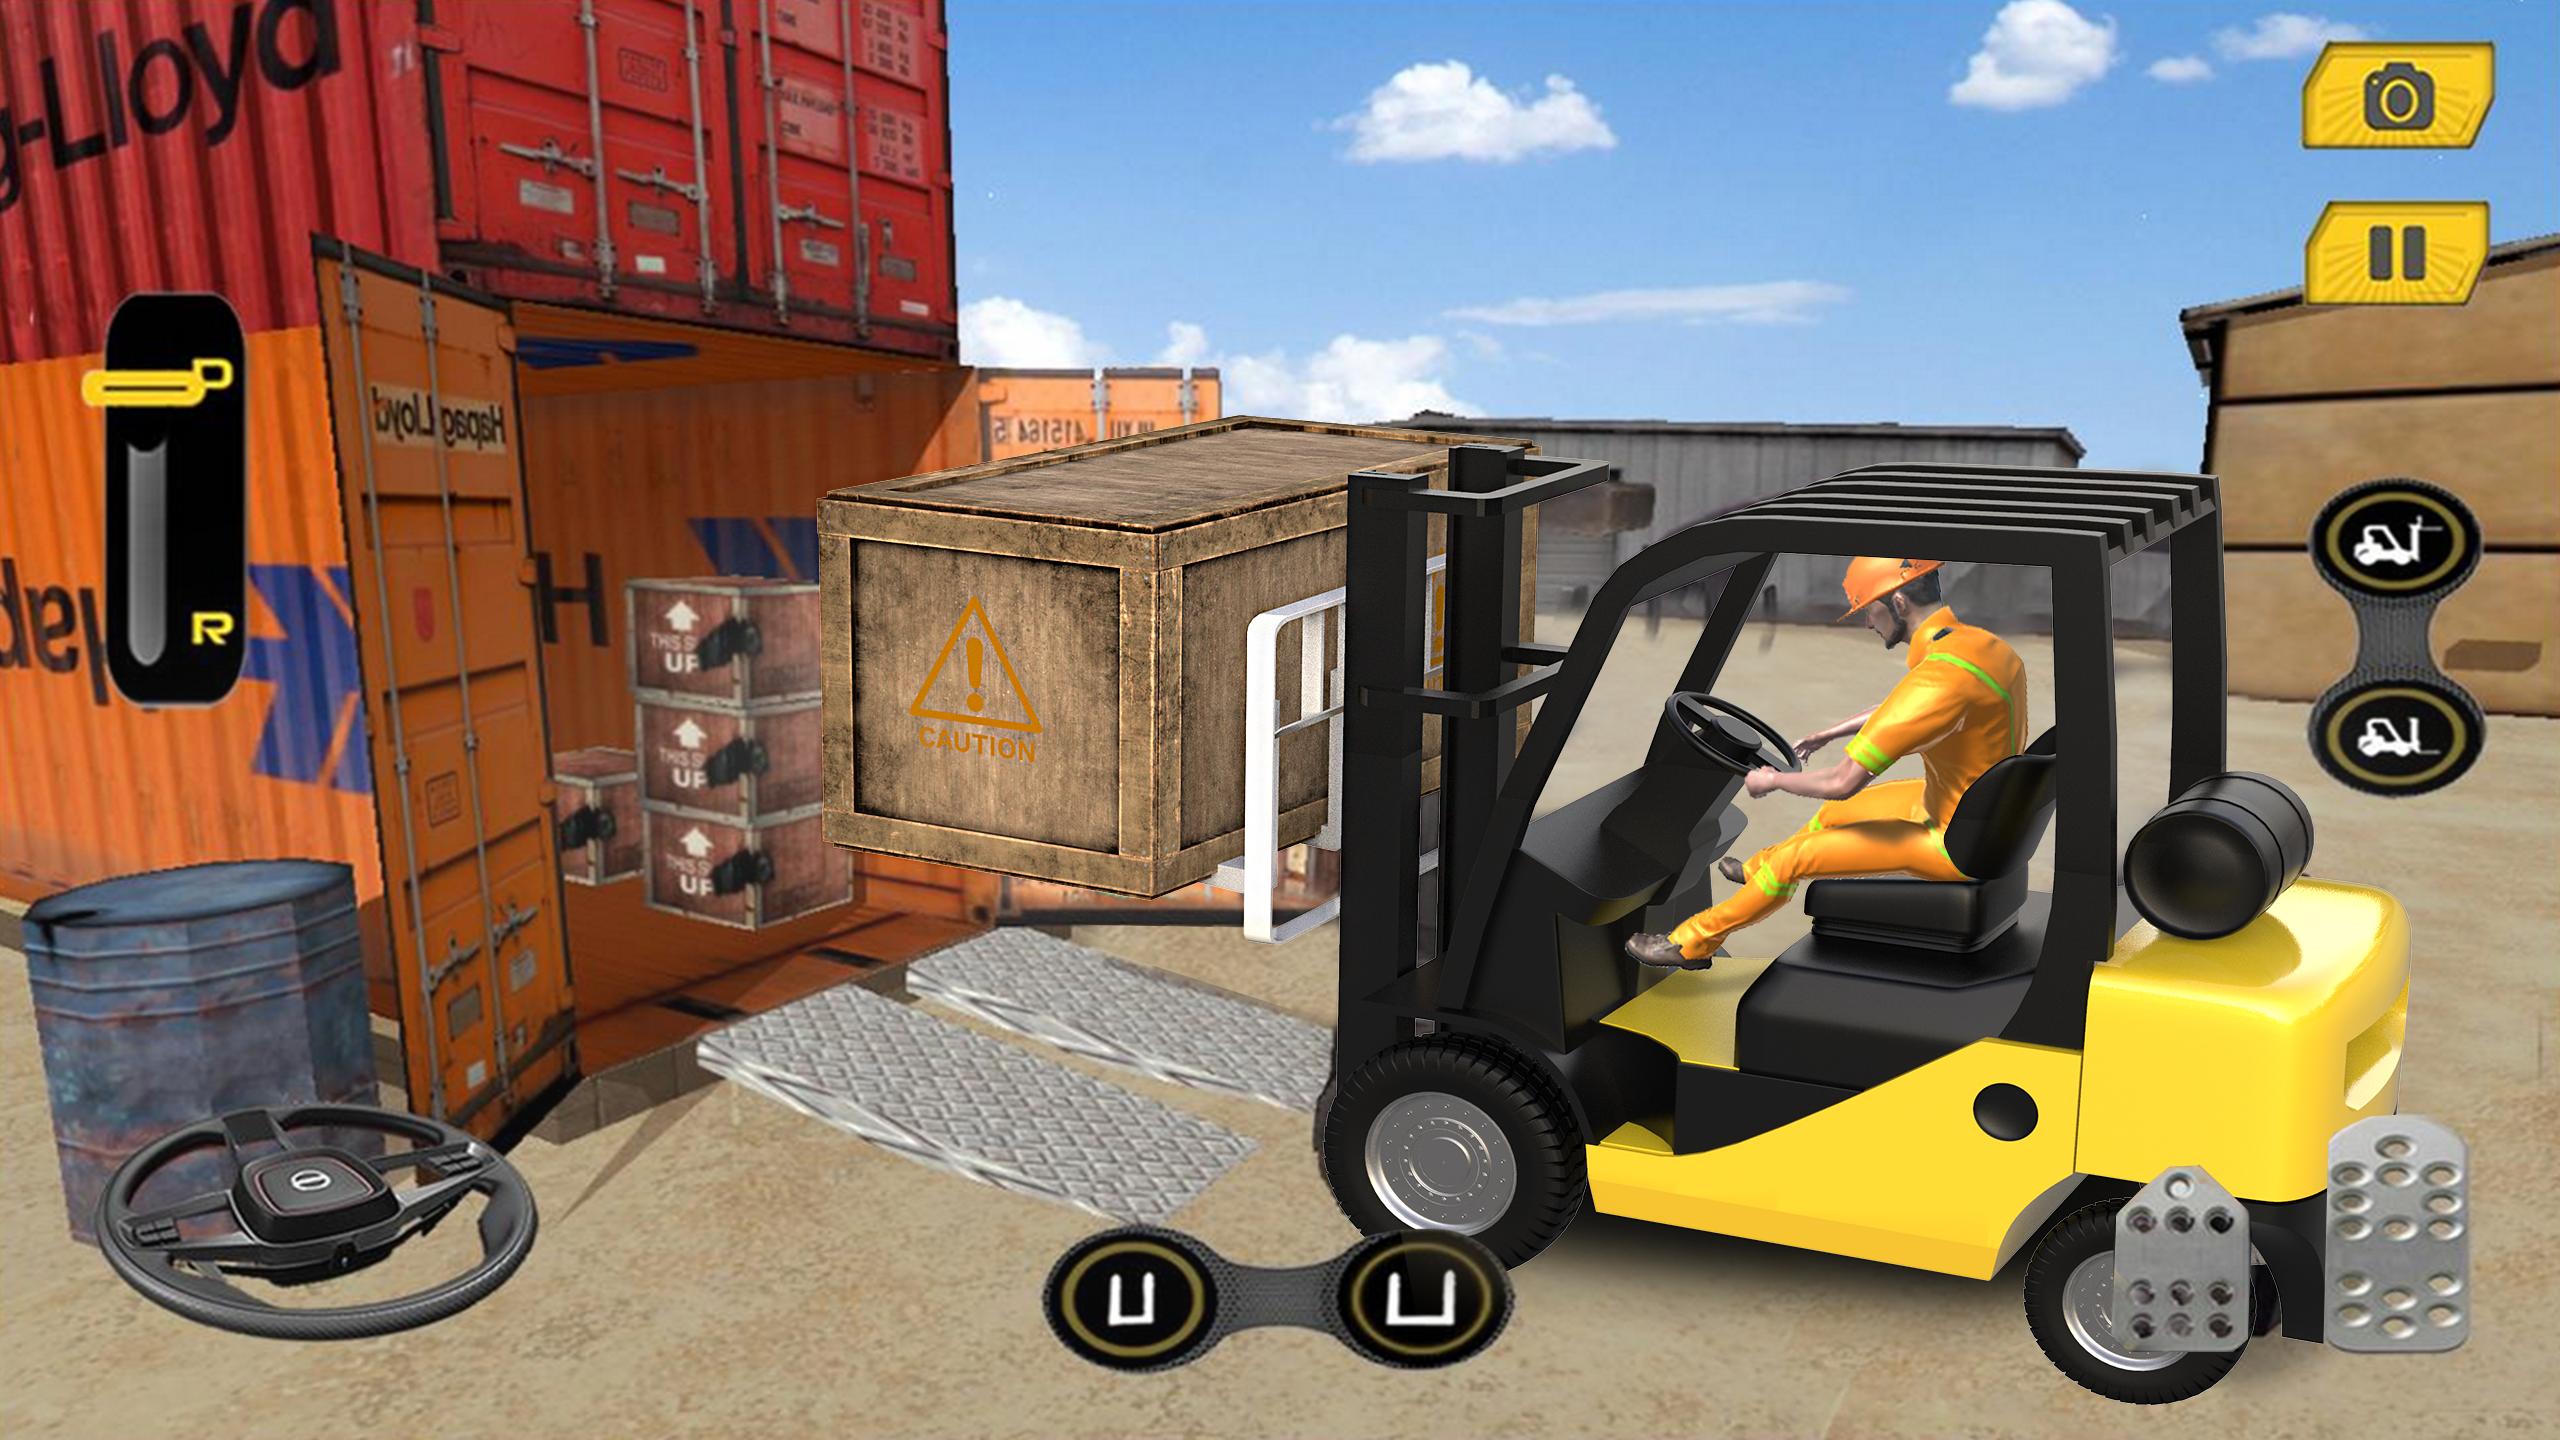 Real Forklift Simulator 2019: Cargo Forklift Games 3.1 Screenshot 10